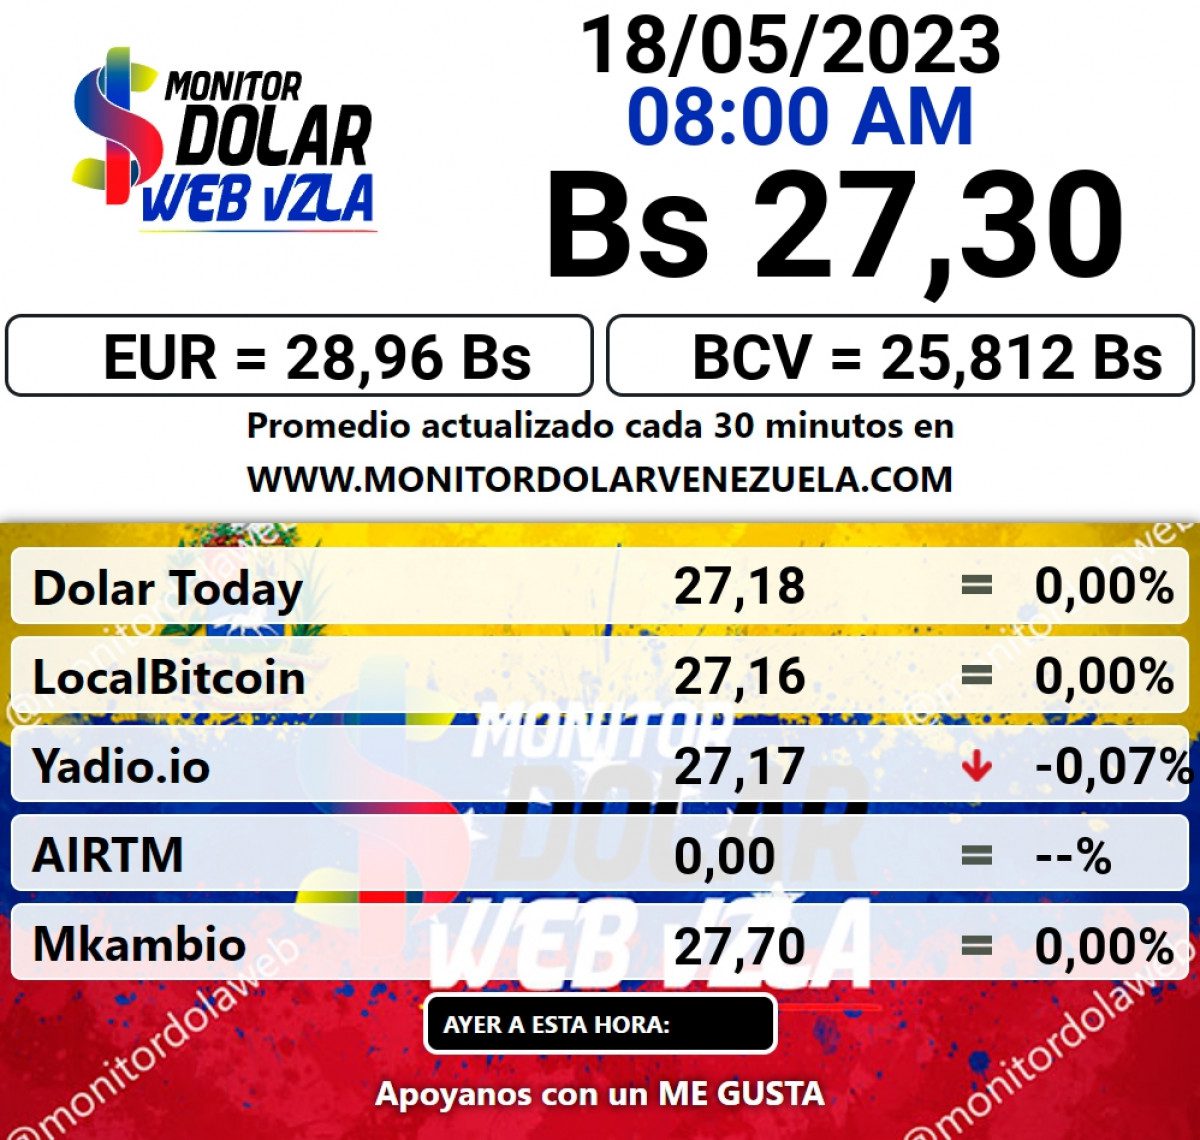 dolartoday en venezuela precio del dolar este jueves 18 de mayo de 2023 laverdaddemonagas.com monitor2